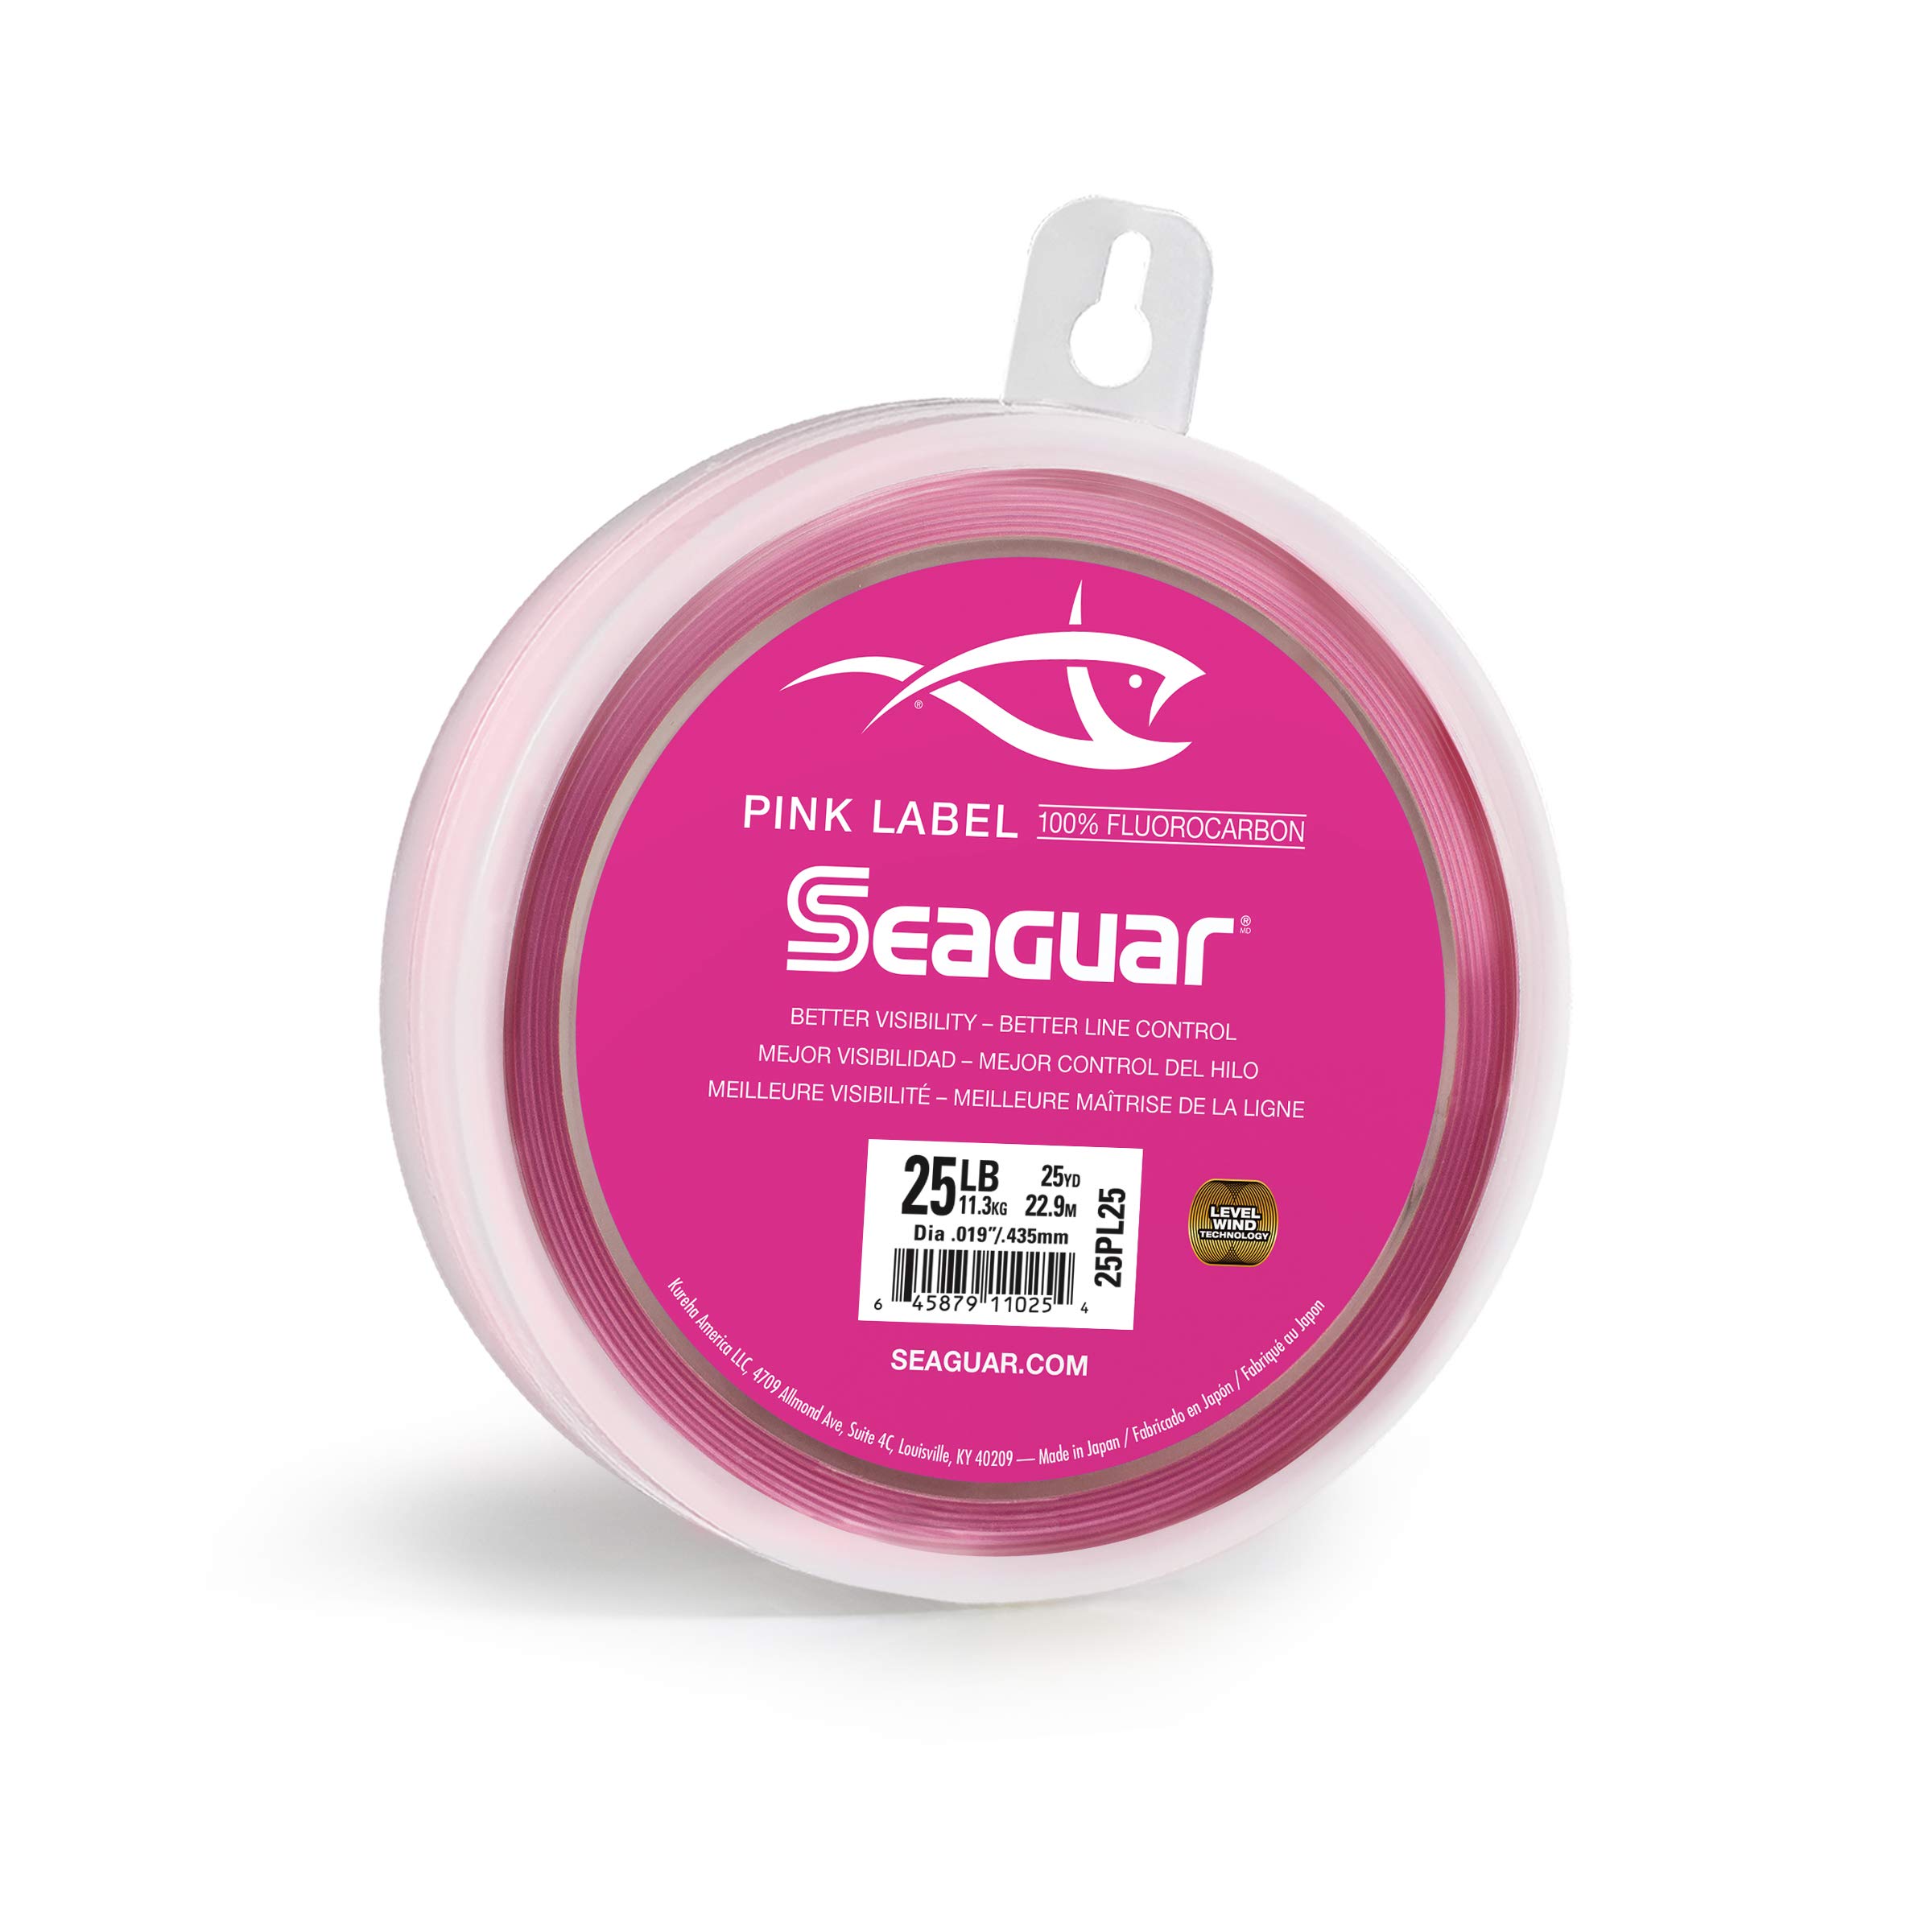 Seaguar Pink Label Fluorocarbon Fishing Leader Line, 100